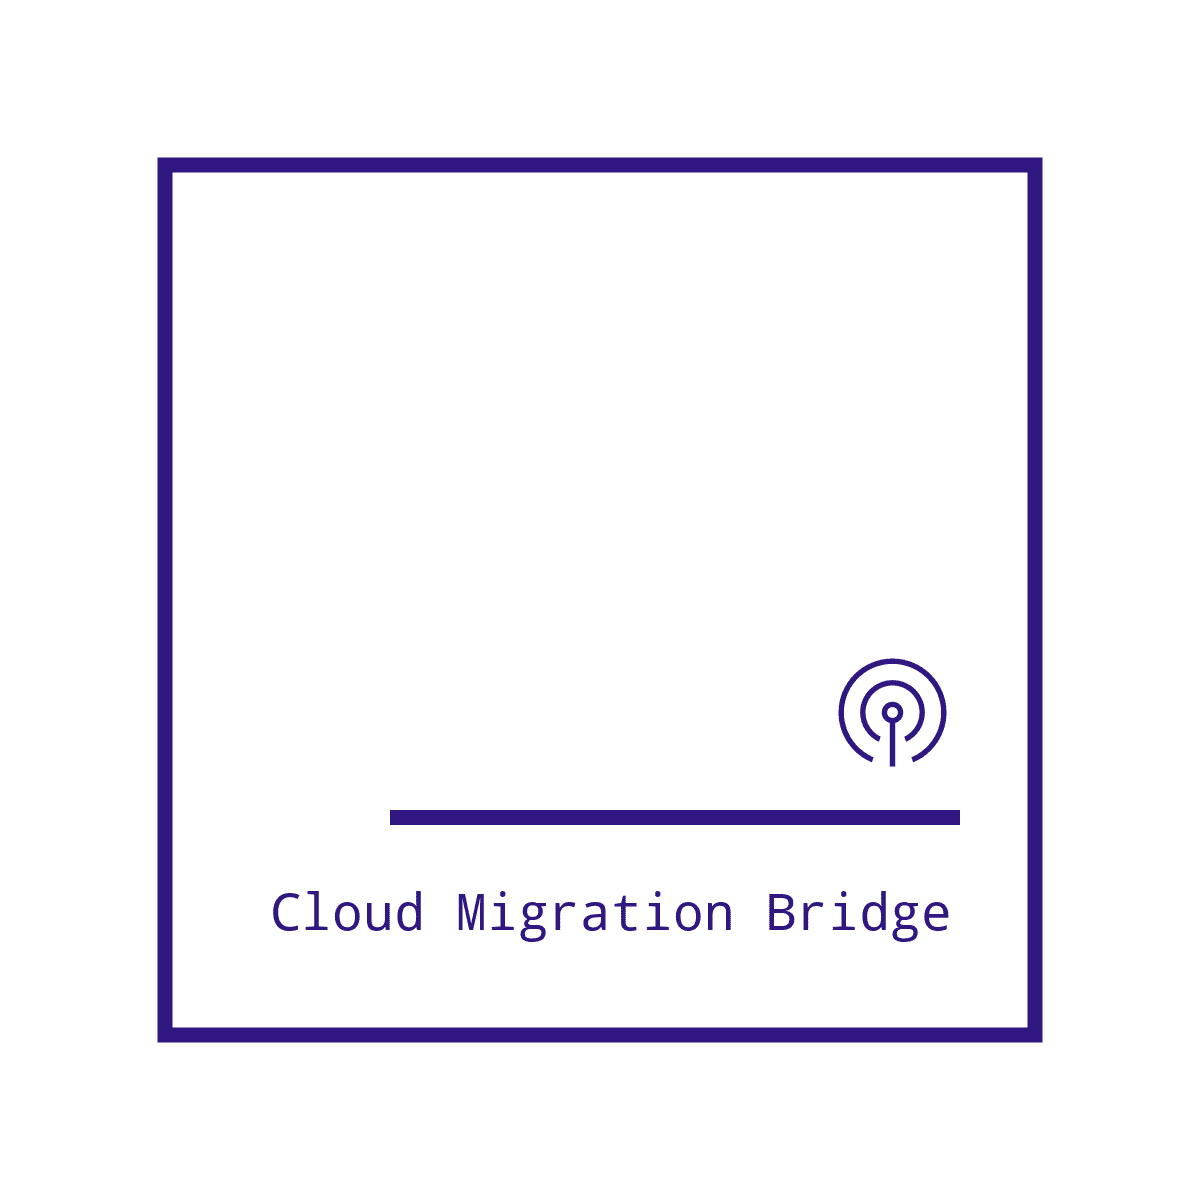 Cloud Migration Bridge